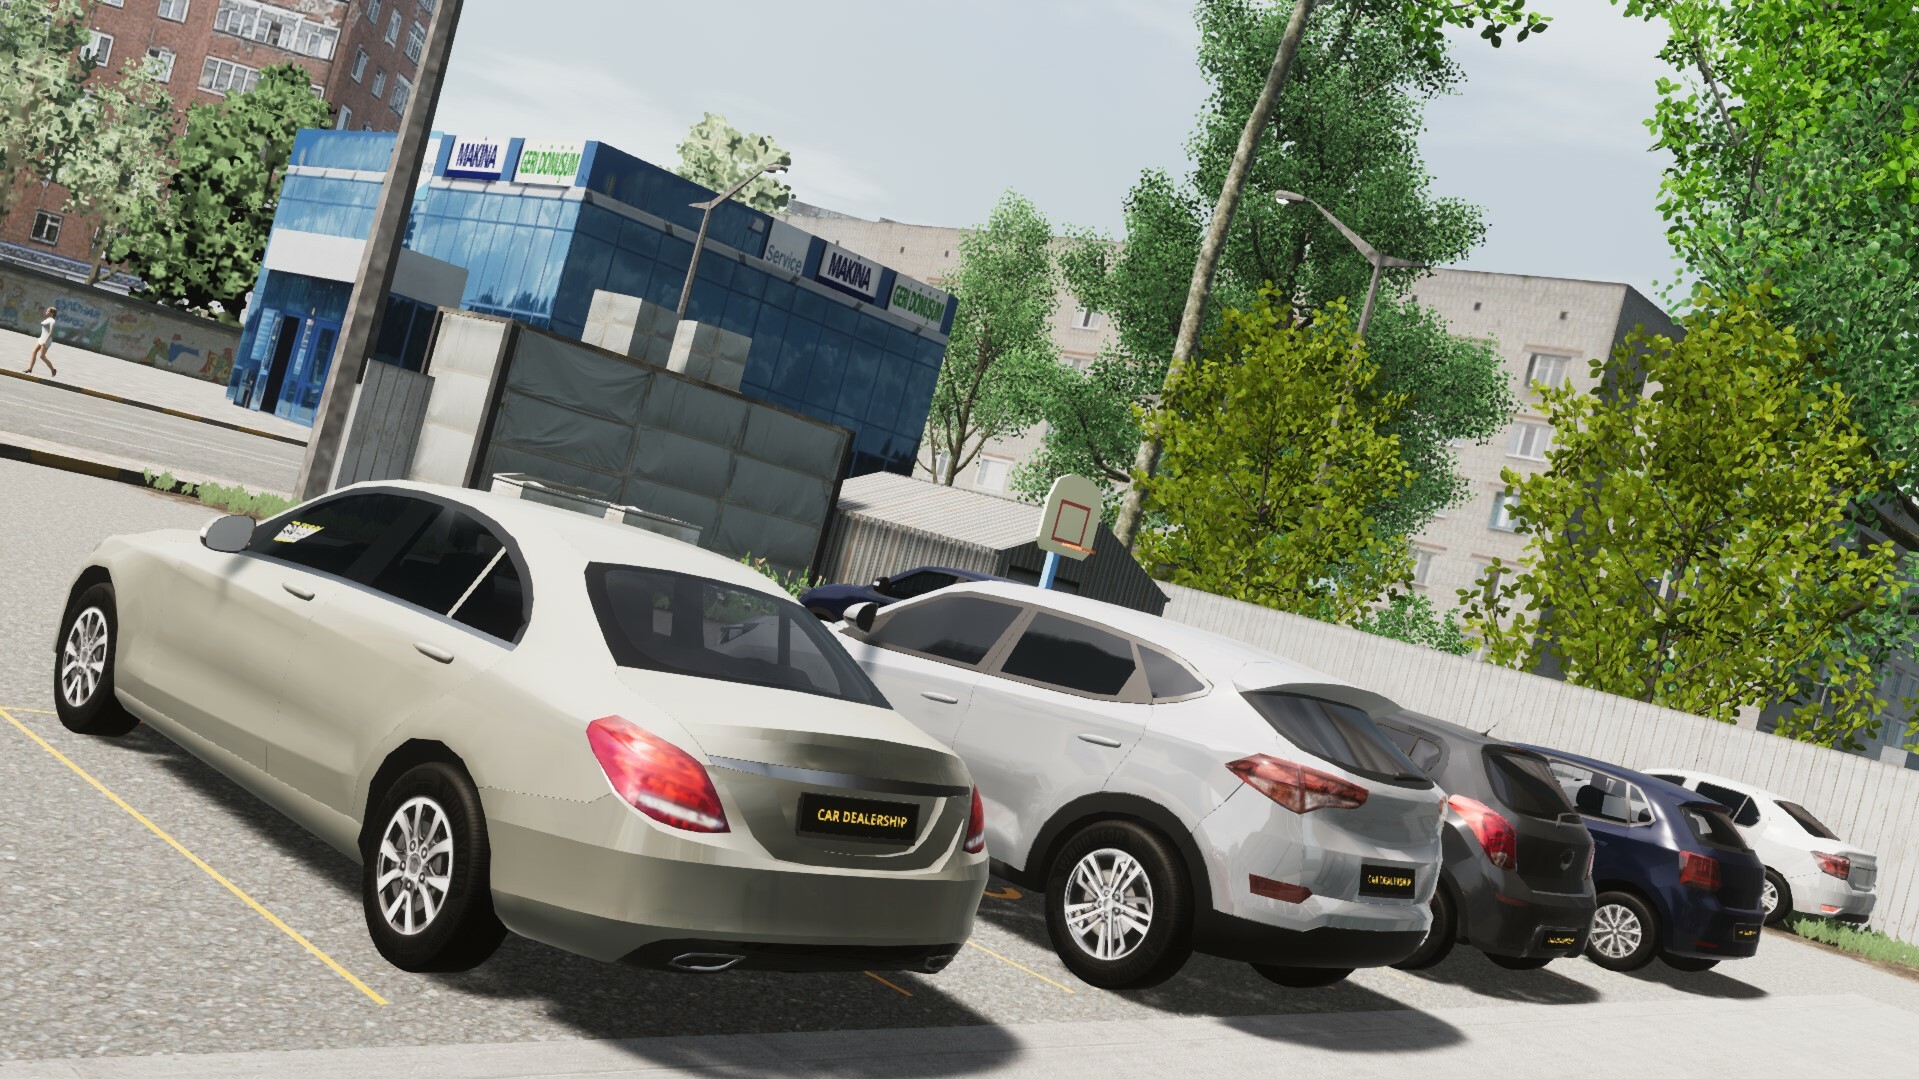 Car Dealership Simulator Free Download